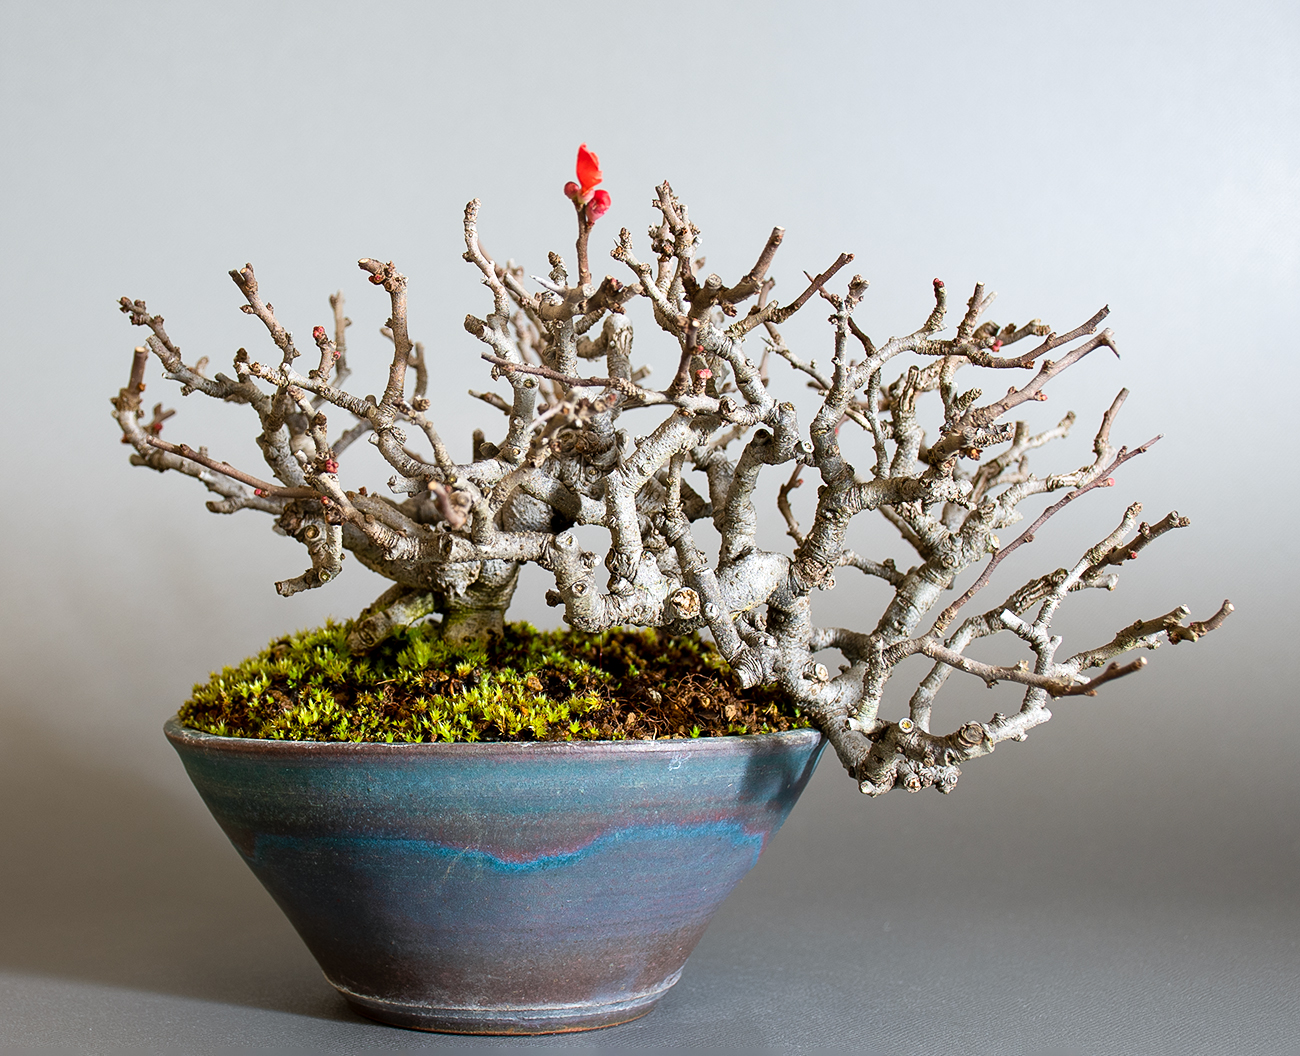 チョウジュバイ-A1（ちょうじゅばい・長寿梅）花もの盆栽の販売と育て方・作り方・Chaenomeles speciosa 'Chojubai' bonsai